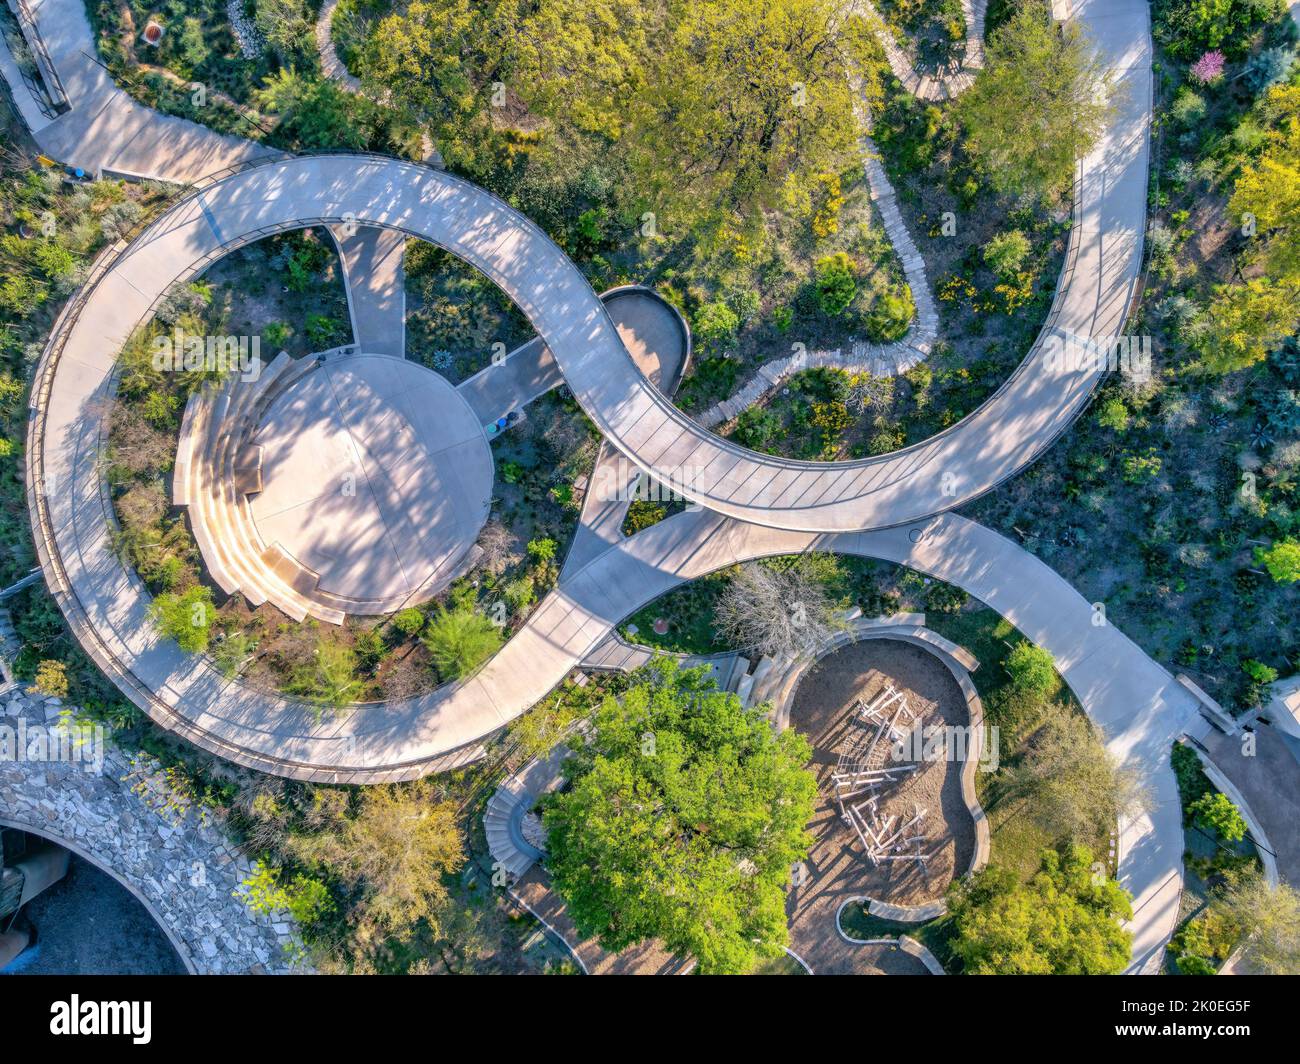 Leerer Park in Austin, Texas mit spiralförmigem Betonweg mit kleinem Amphitheater in der Mitte. Luftaufnahme eines Parks, der von Pflanzen und Bäumen umgeben ist Stockfoto